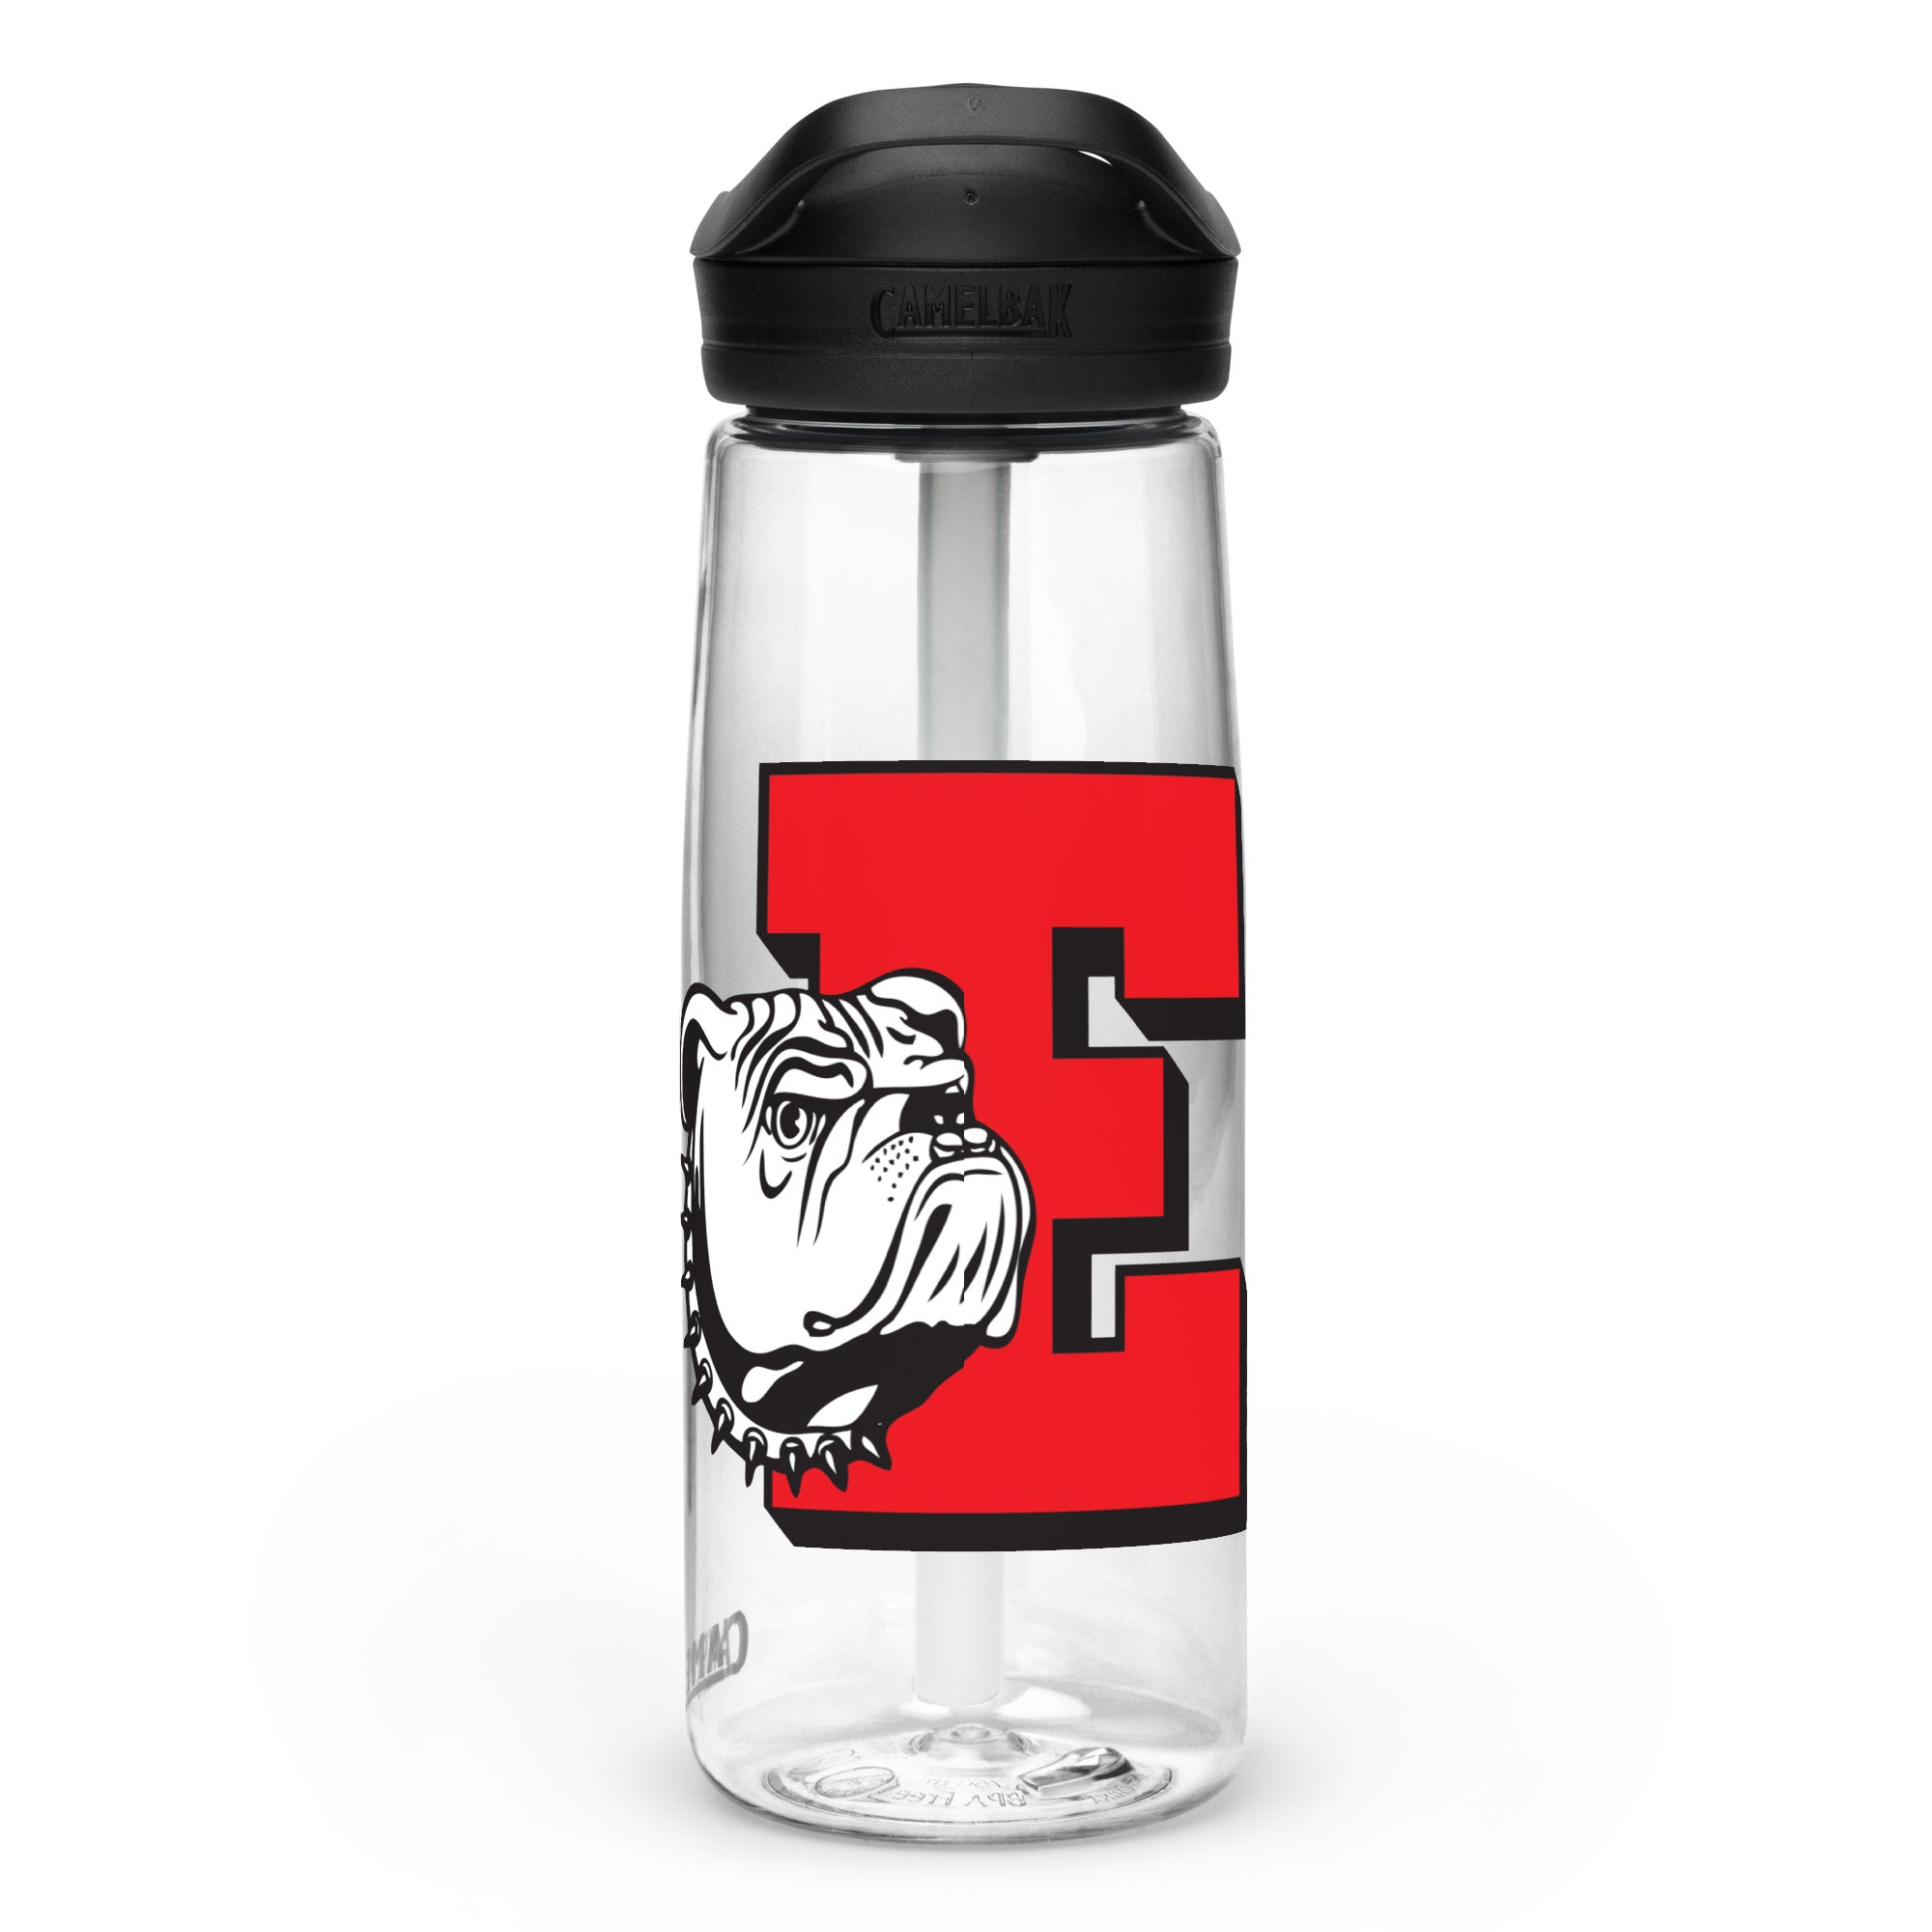 Easton HS Sports water bottle